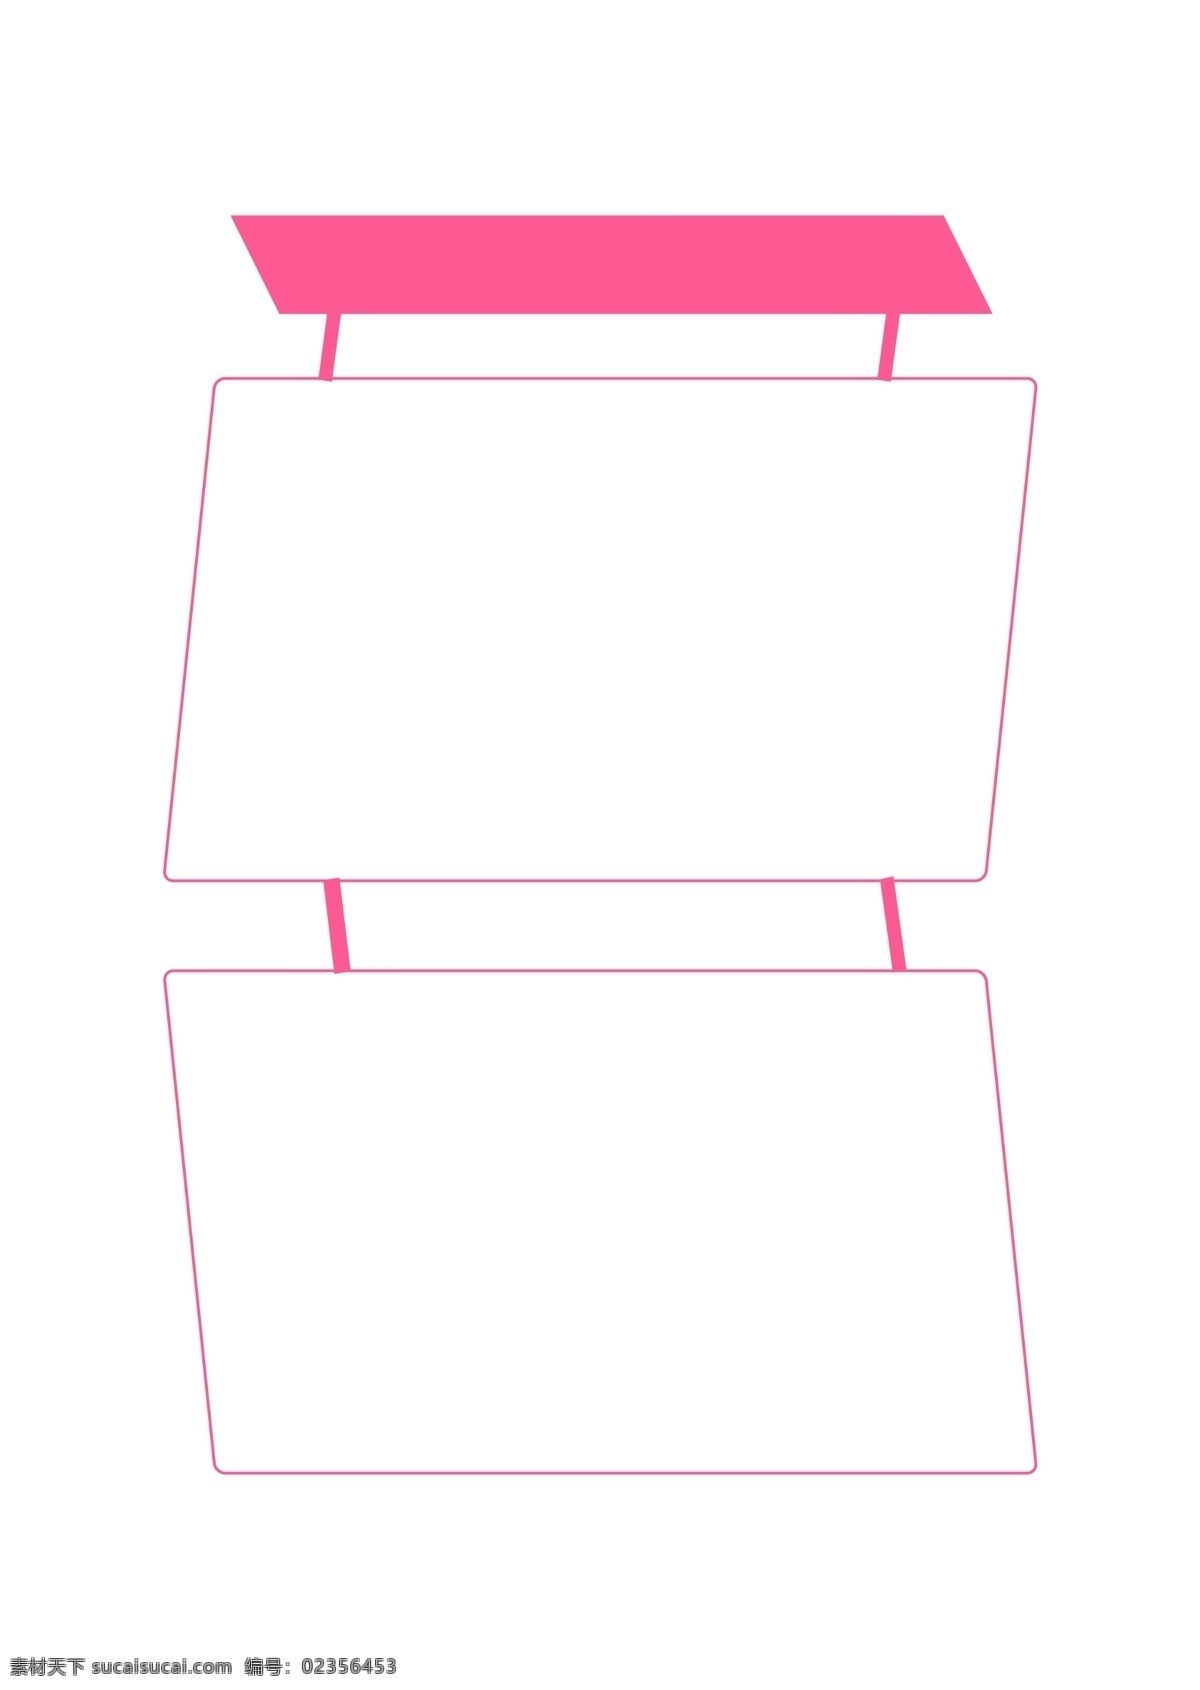 粉色 枚 红色 可爱 促销 边框 手绘 促销标签 粉色边框 ppt边框 矩形框 卡通 png图标 psd文件